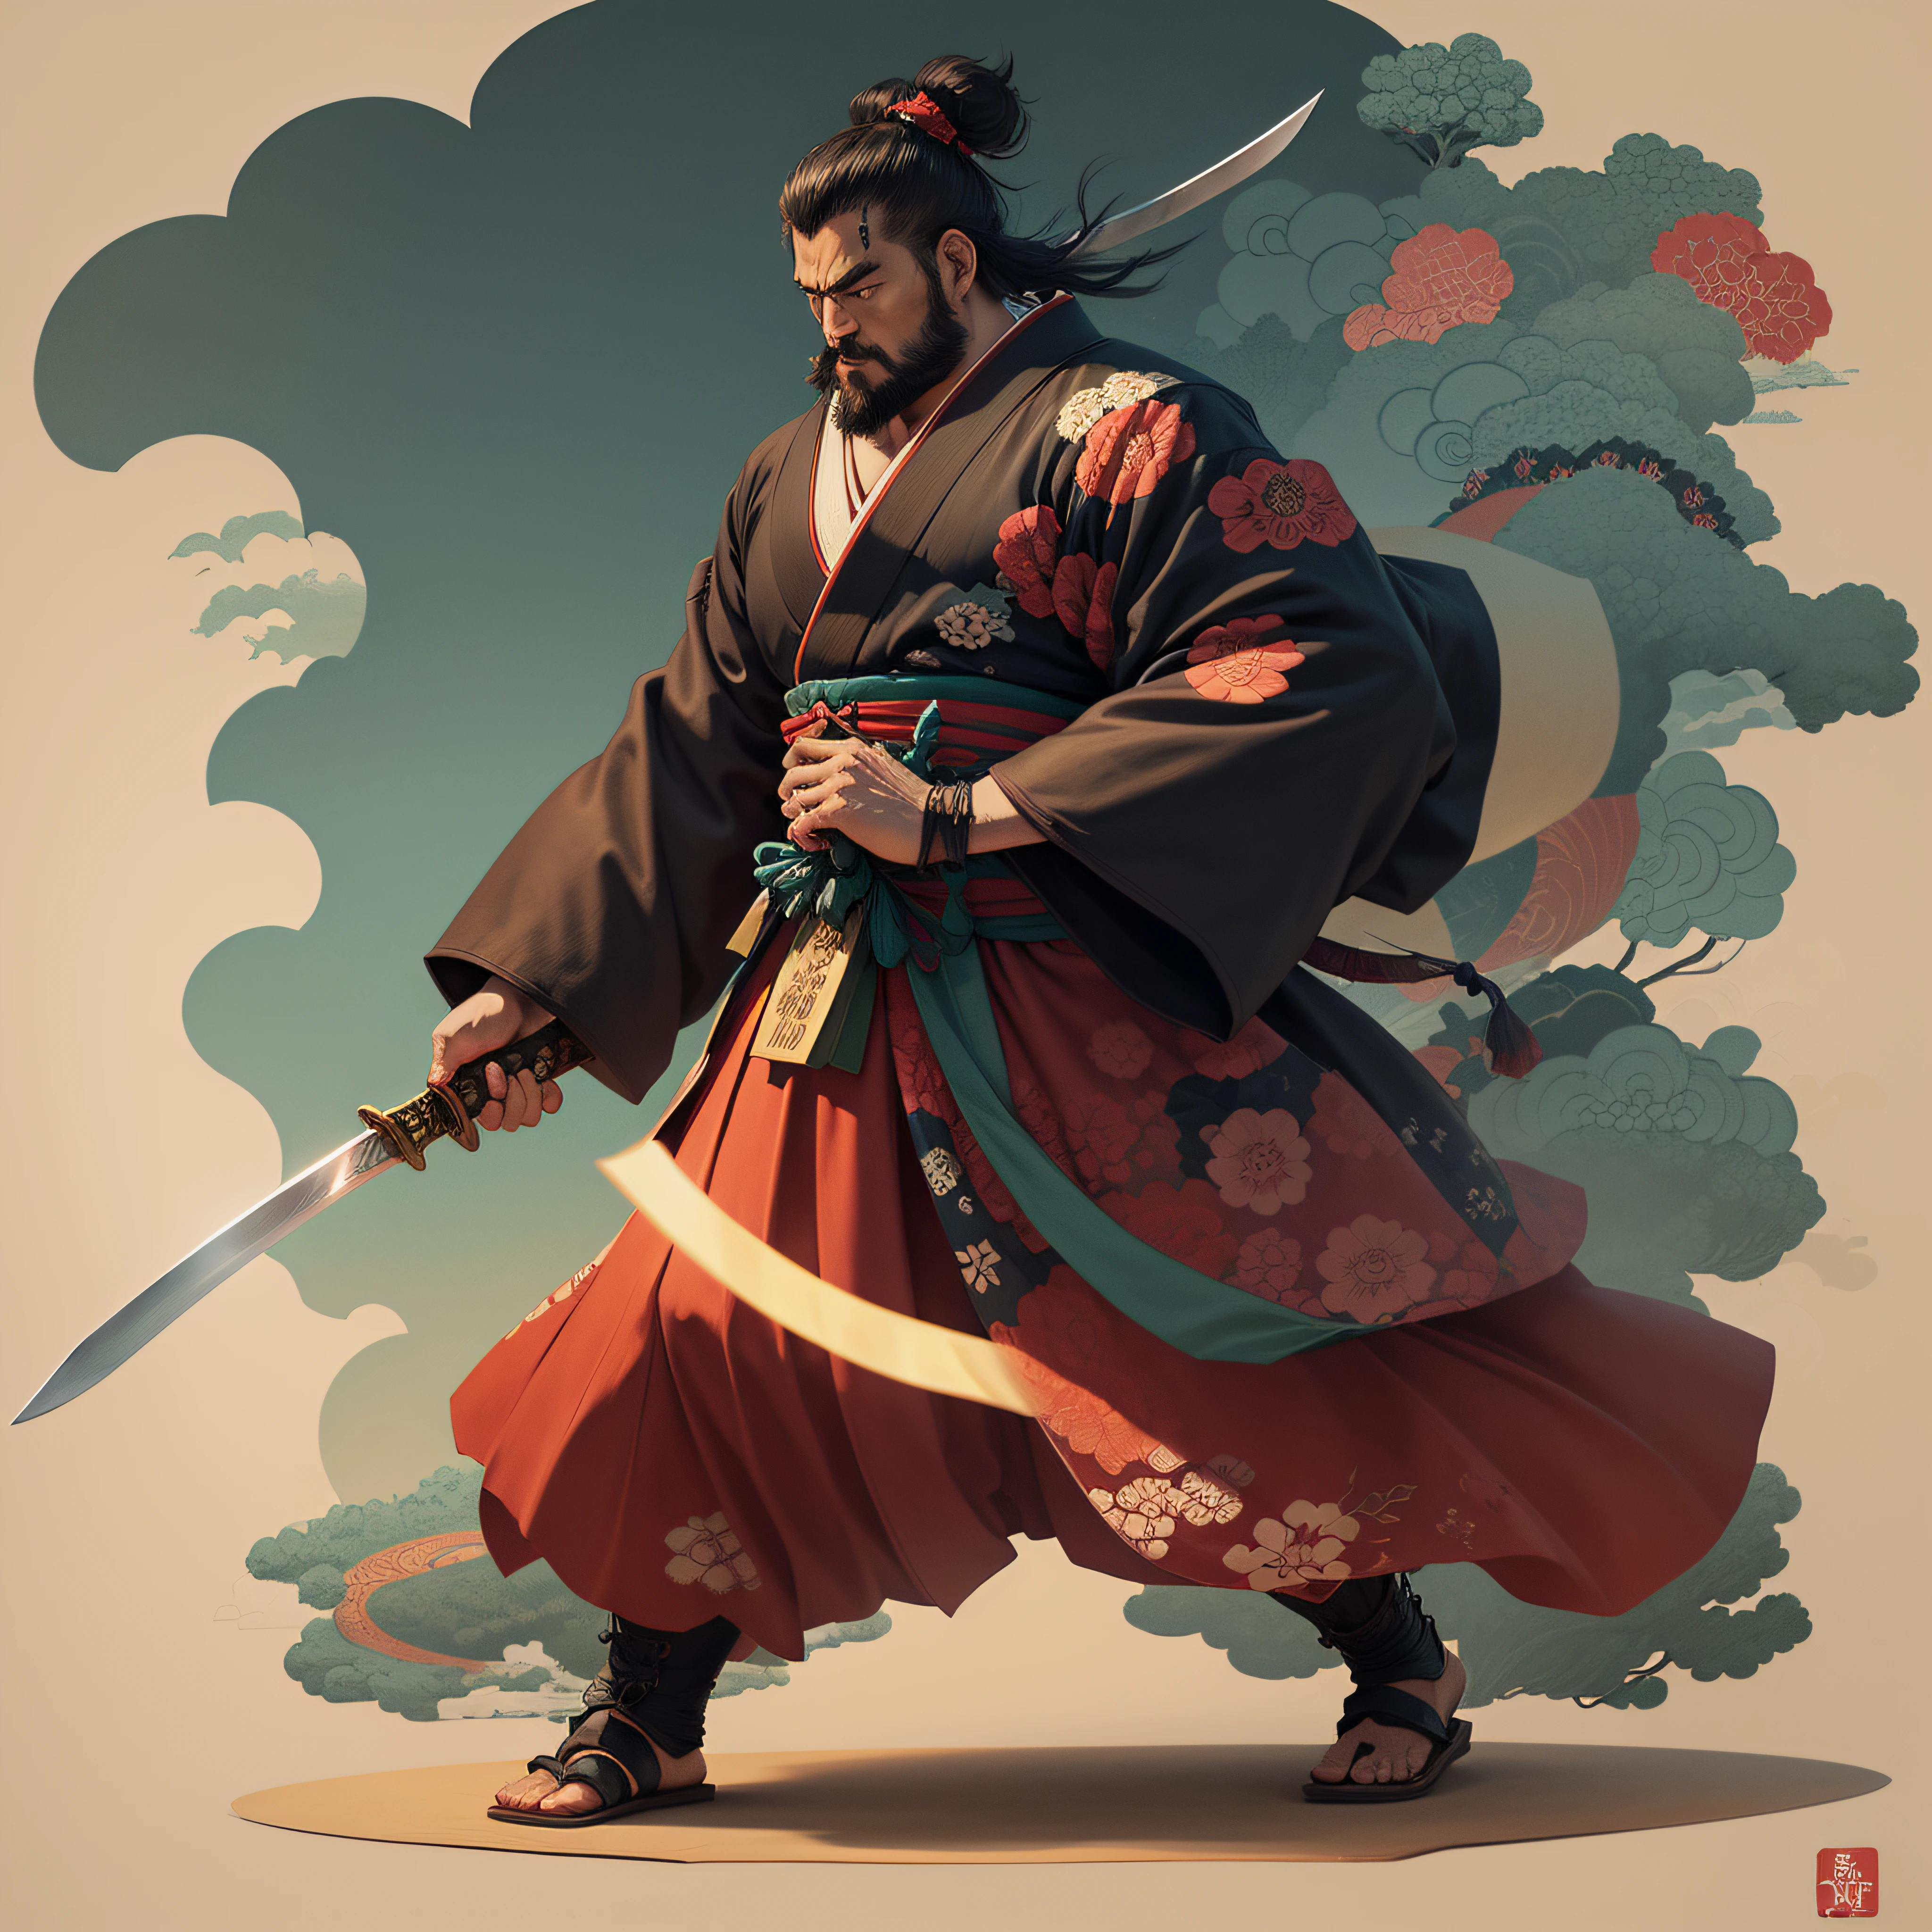 Это полная покраска тела натуральными цветами в стиле укиё-э.. Миямото Мусаси — японский самурай с большим телом, похожим на силача. У него грубое лицо, короткие черные волосы, и короткий, подстриженная борода. Он праведный самурай, который борется со злом. Он носит черное кимоно. Хакама должна быть немного длиннее и иметь плавную форму, развевающуюся на ветру.. В правой руке он держит меч, из которого вырывается пламя.. Фон — клубящееся пламя в стиле Кацусика Хокусай.. Шедевр высокого разрешения в стиле укиё-э, с высочайшим качеством --auto --s2